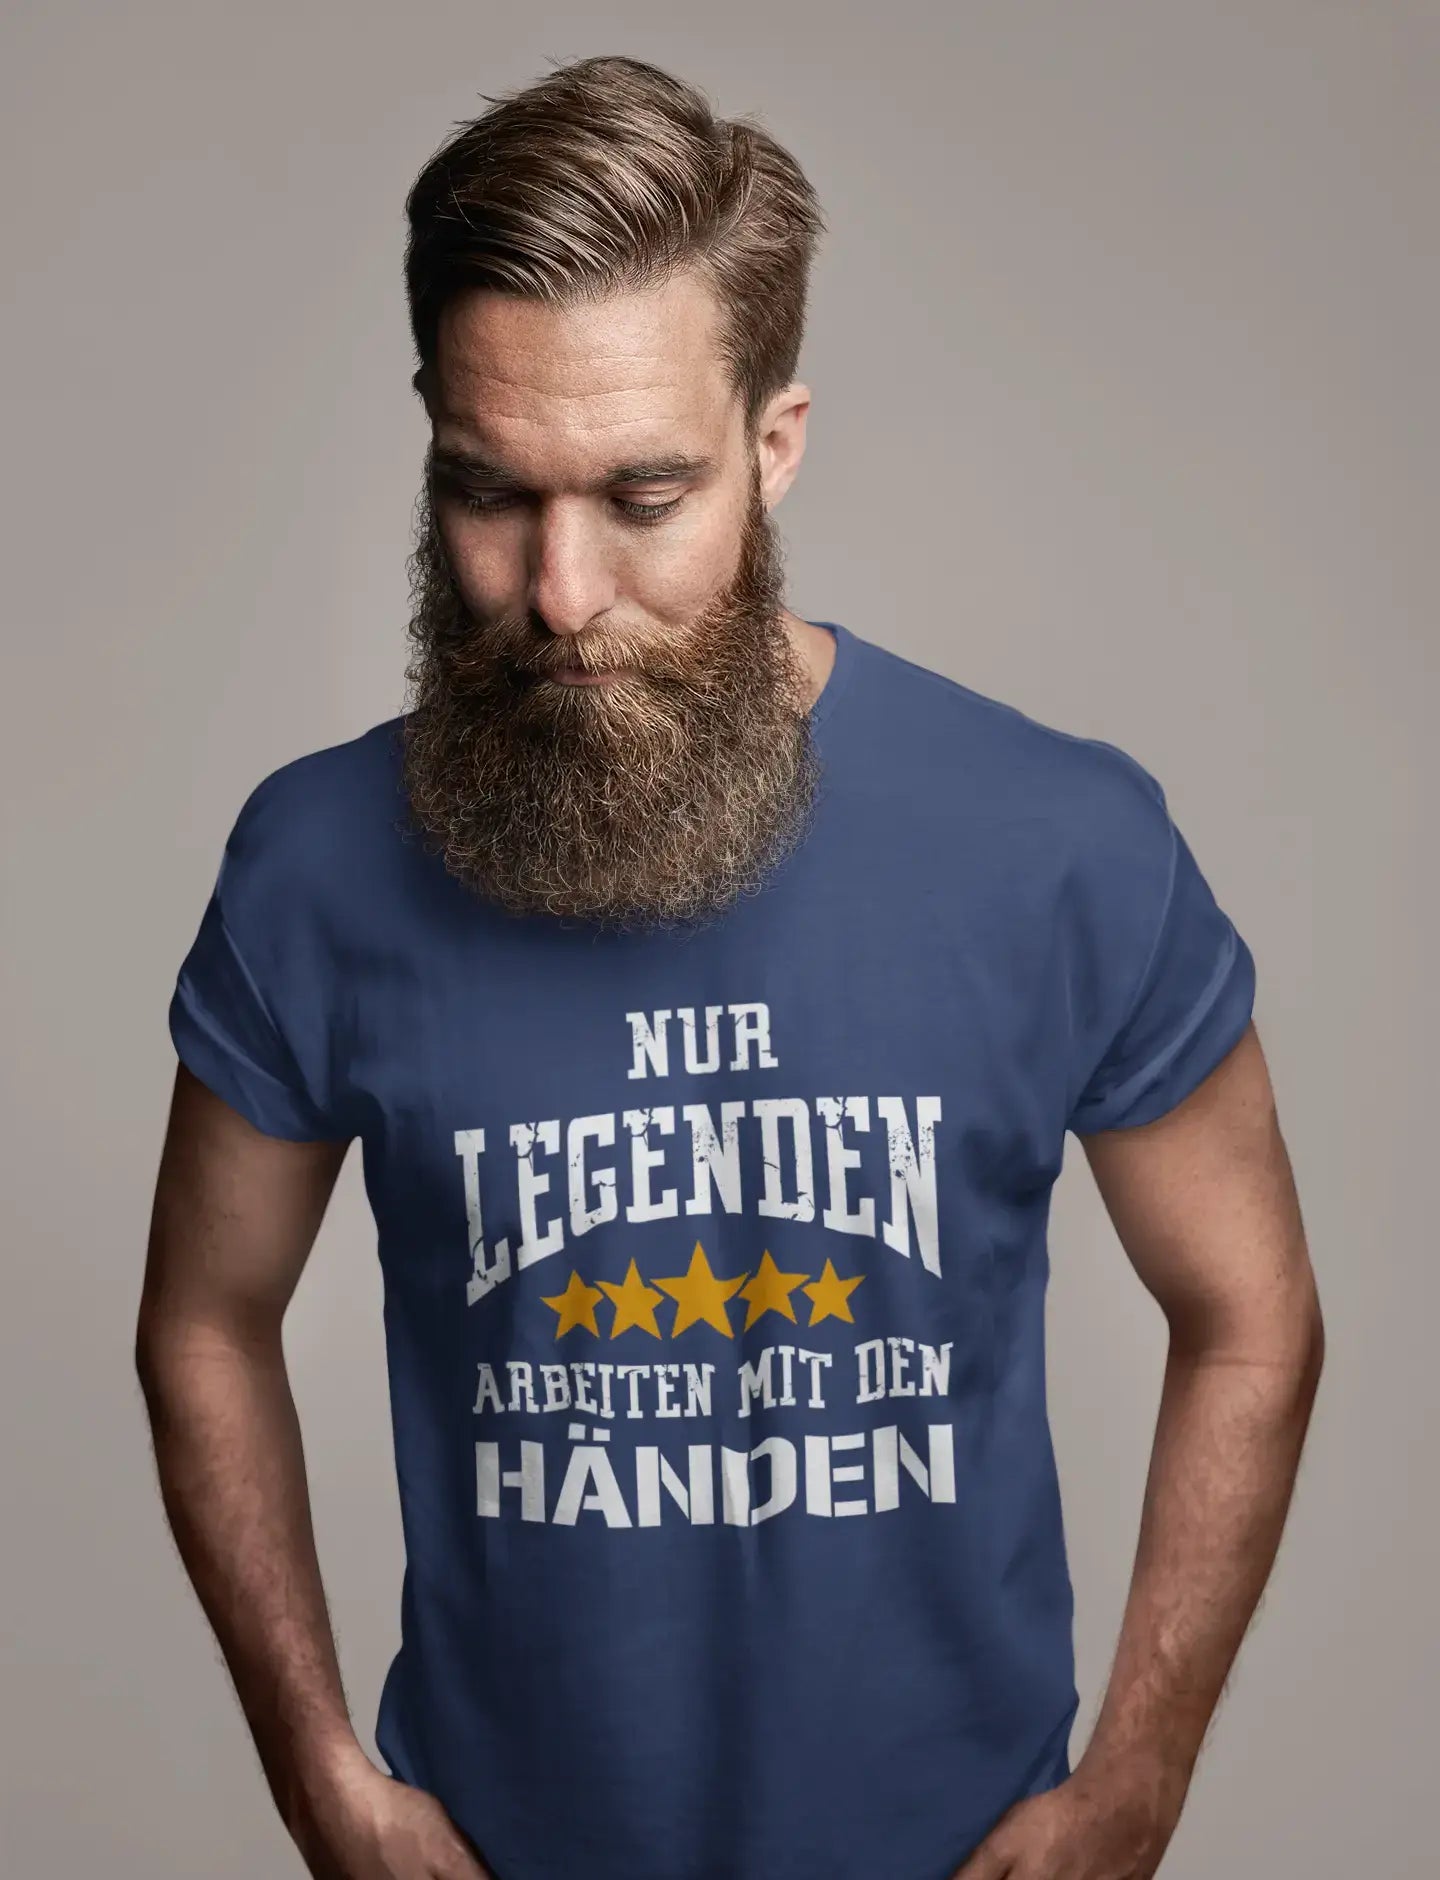 Men's Graphic T-Shirt Legenden Arbeiten Mit Den Handen Gift Idea